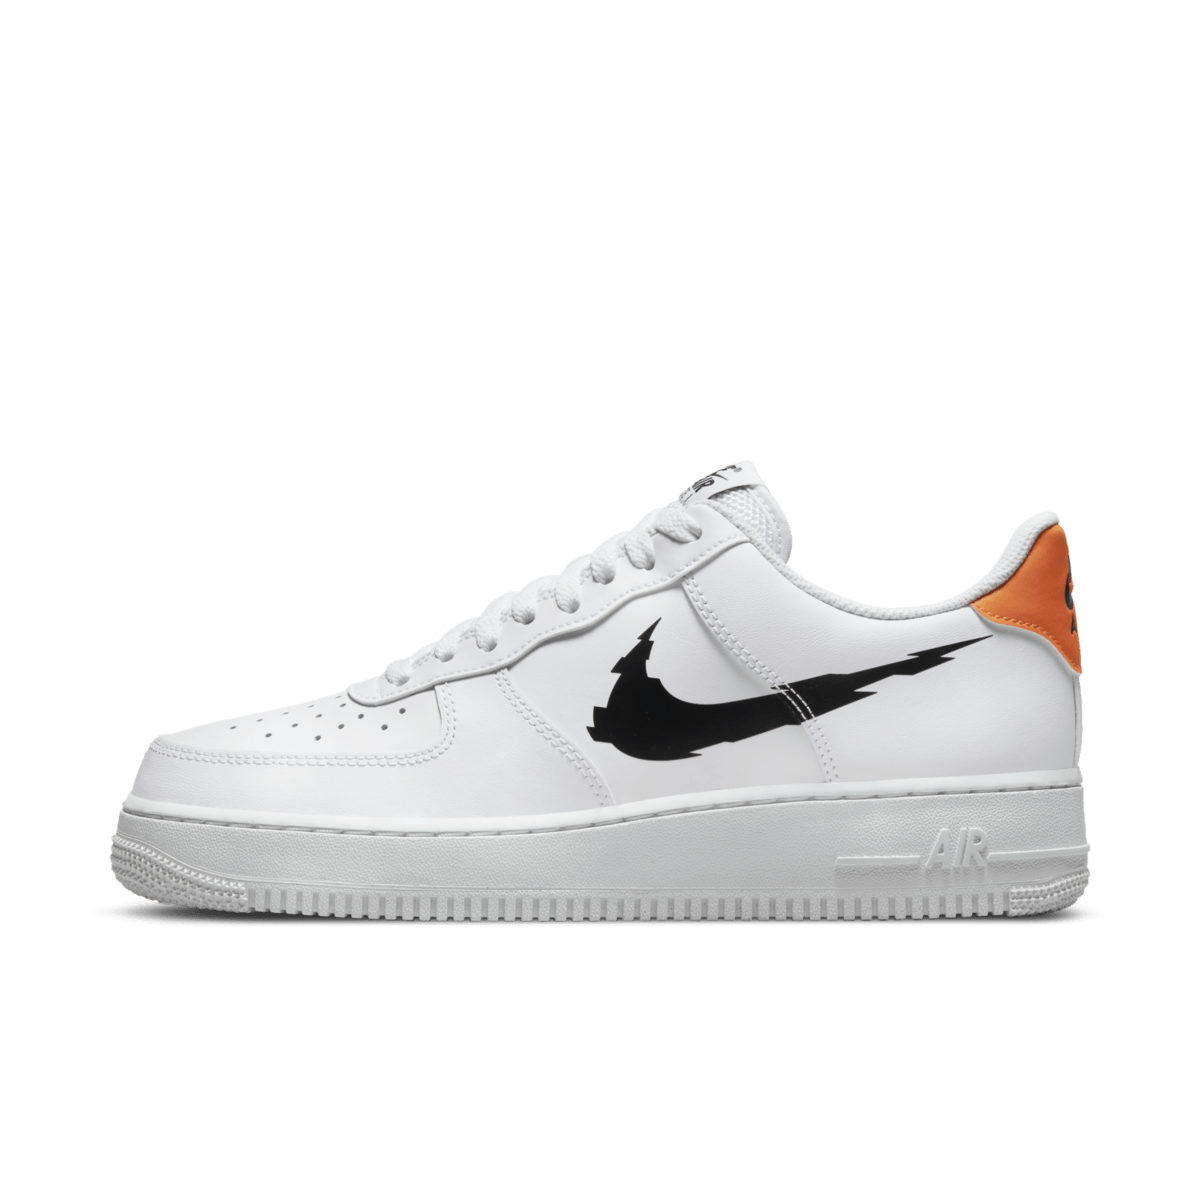 Nike Air Force 1 'White' - Glitch Swoosh